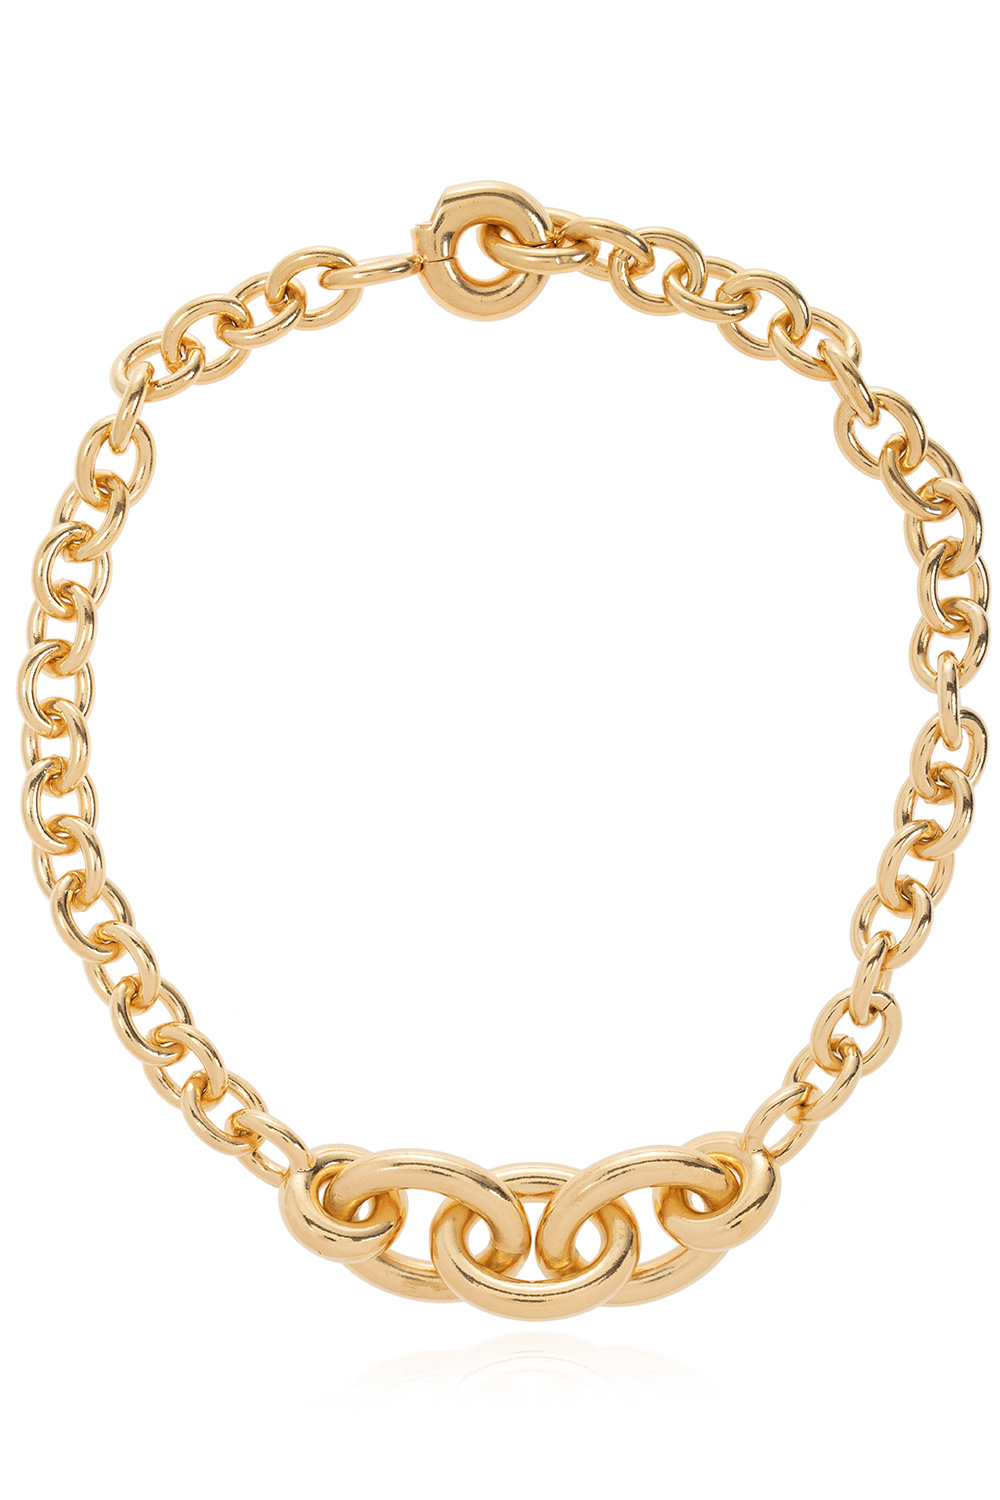 Saint Laurent Opyum necklace